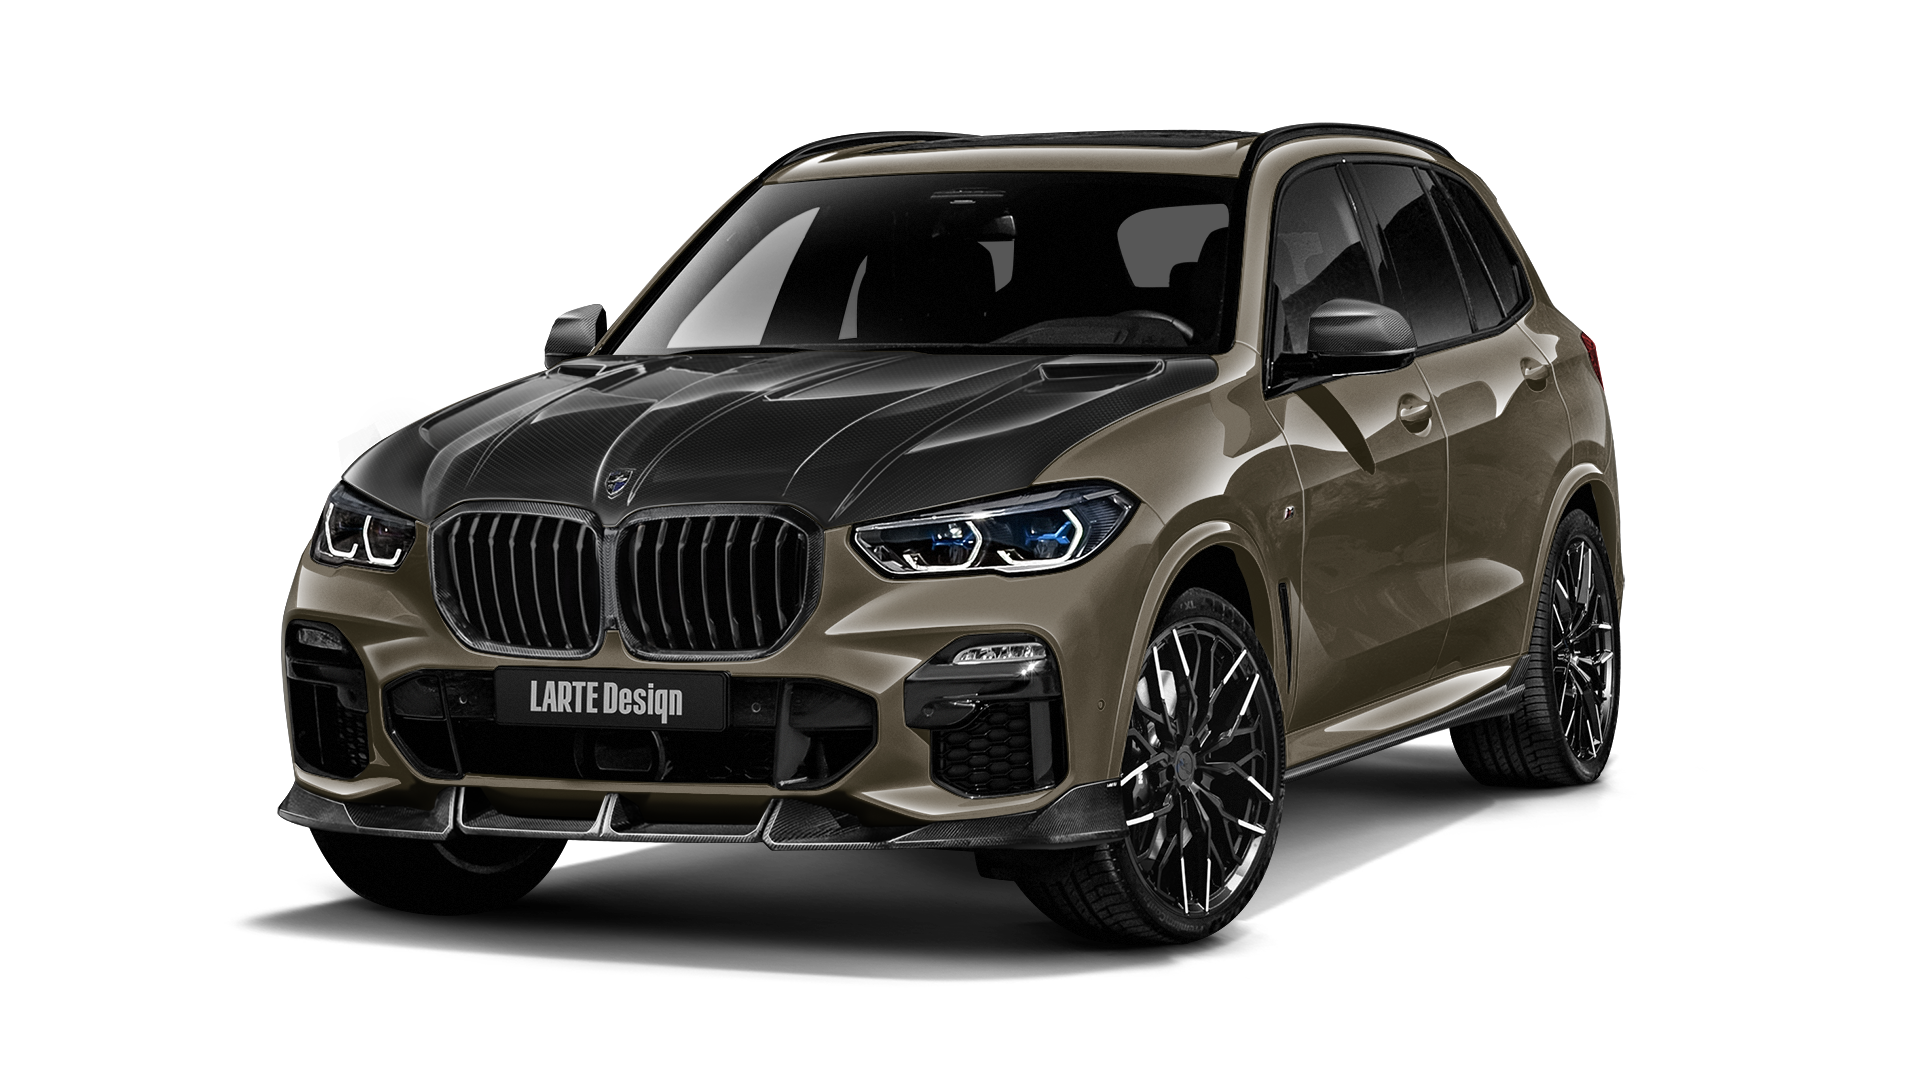 Custom body kit for BMW X5M by LARTE Design